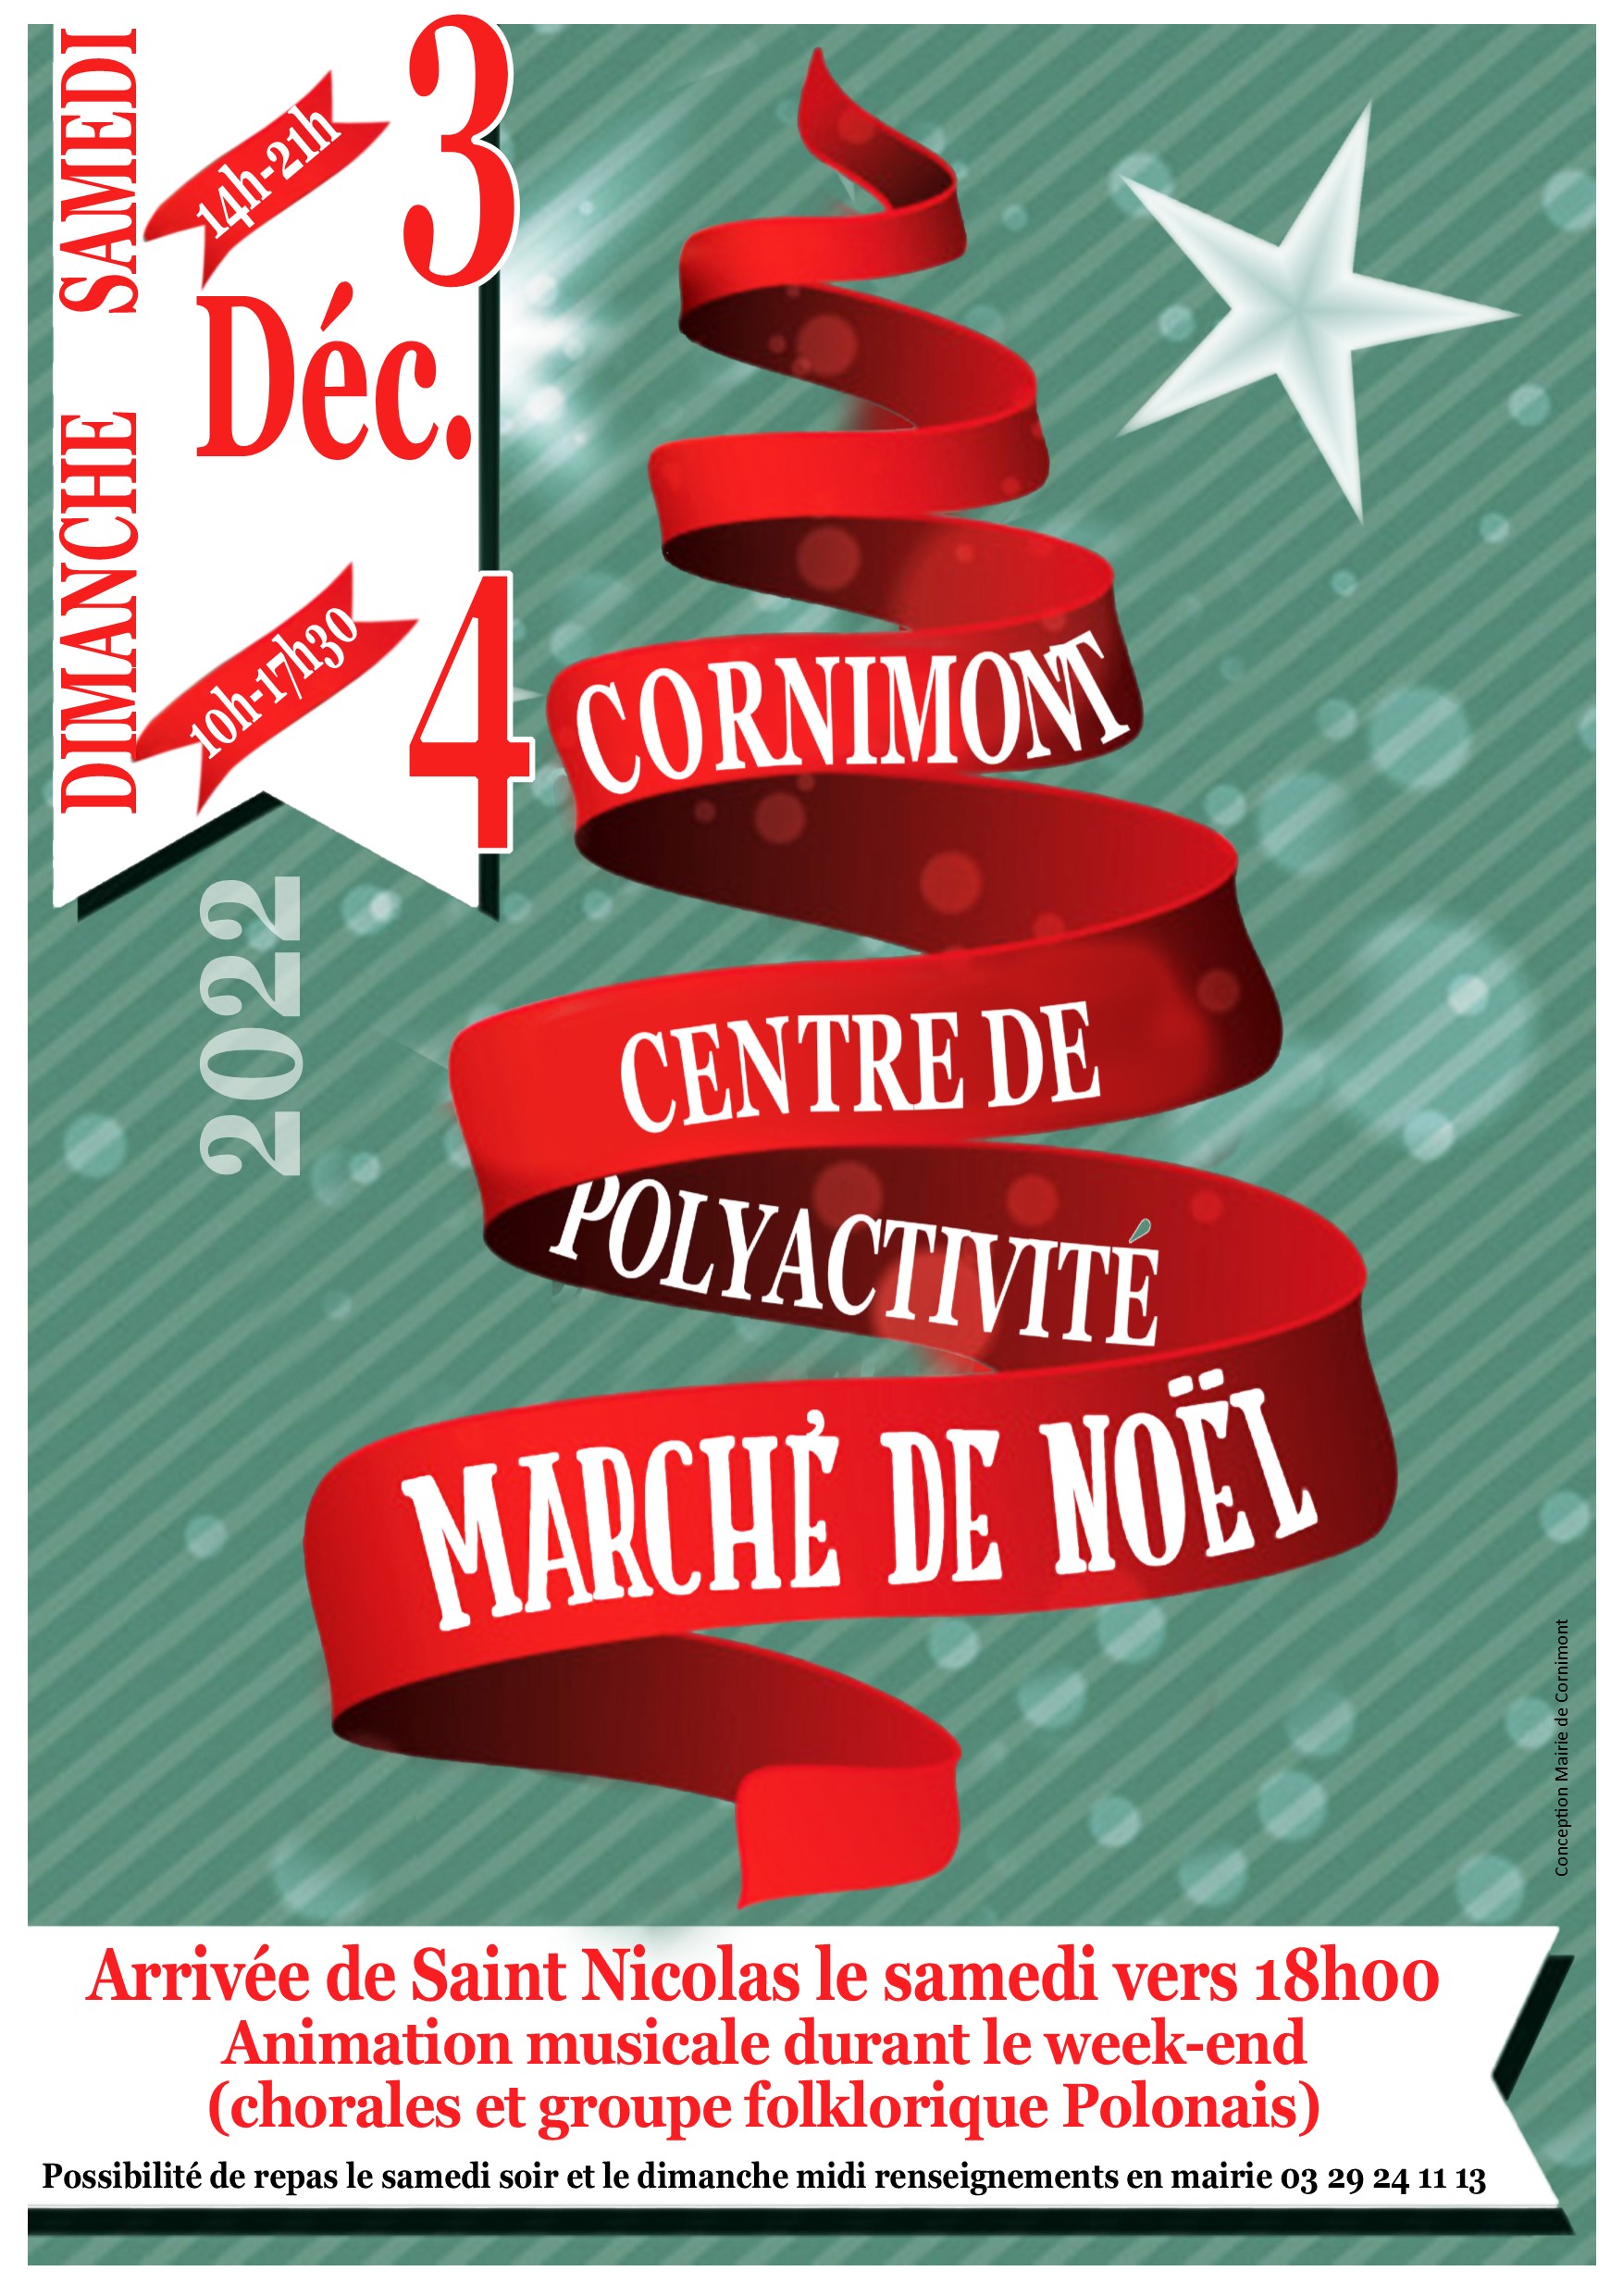 Marché de Noël de Cornimont